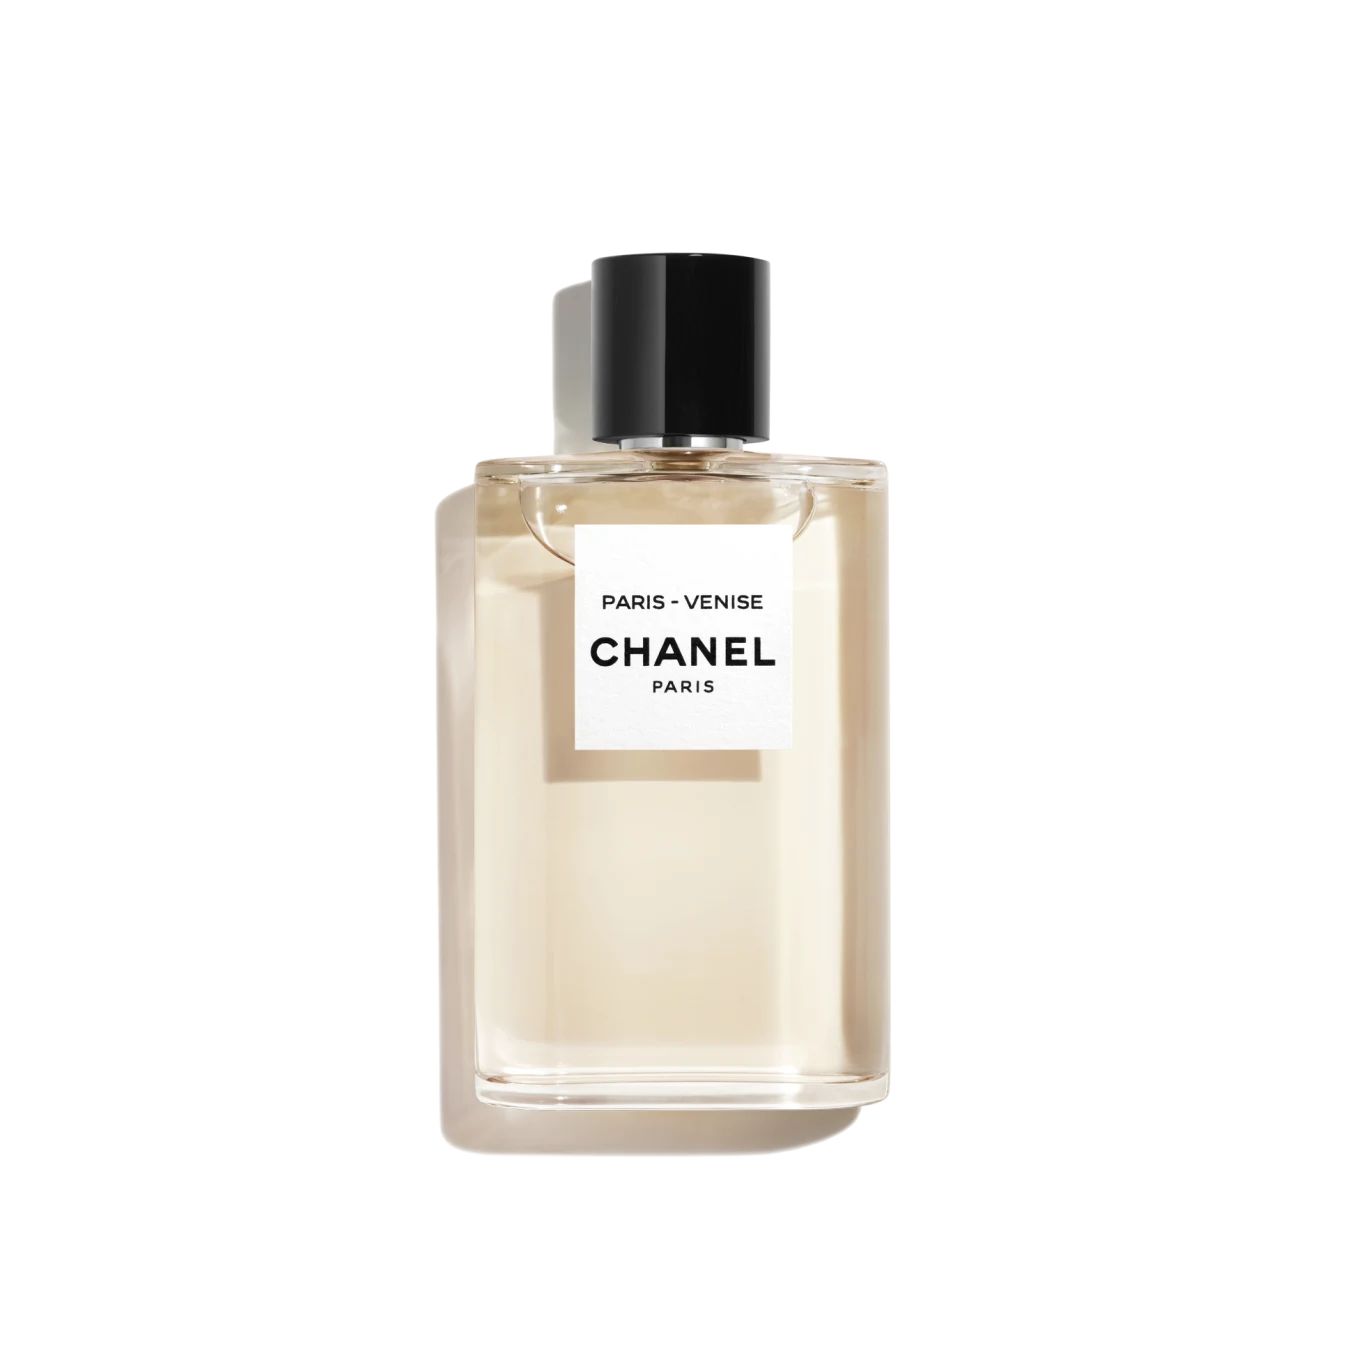 PARIS - VENISE | Chanel, Inc. (US)